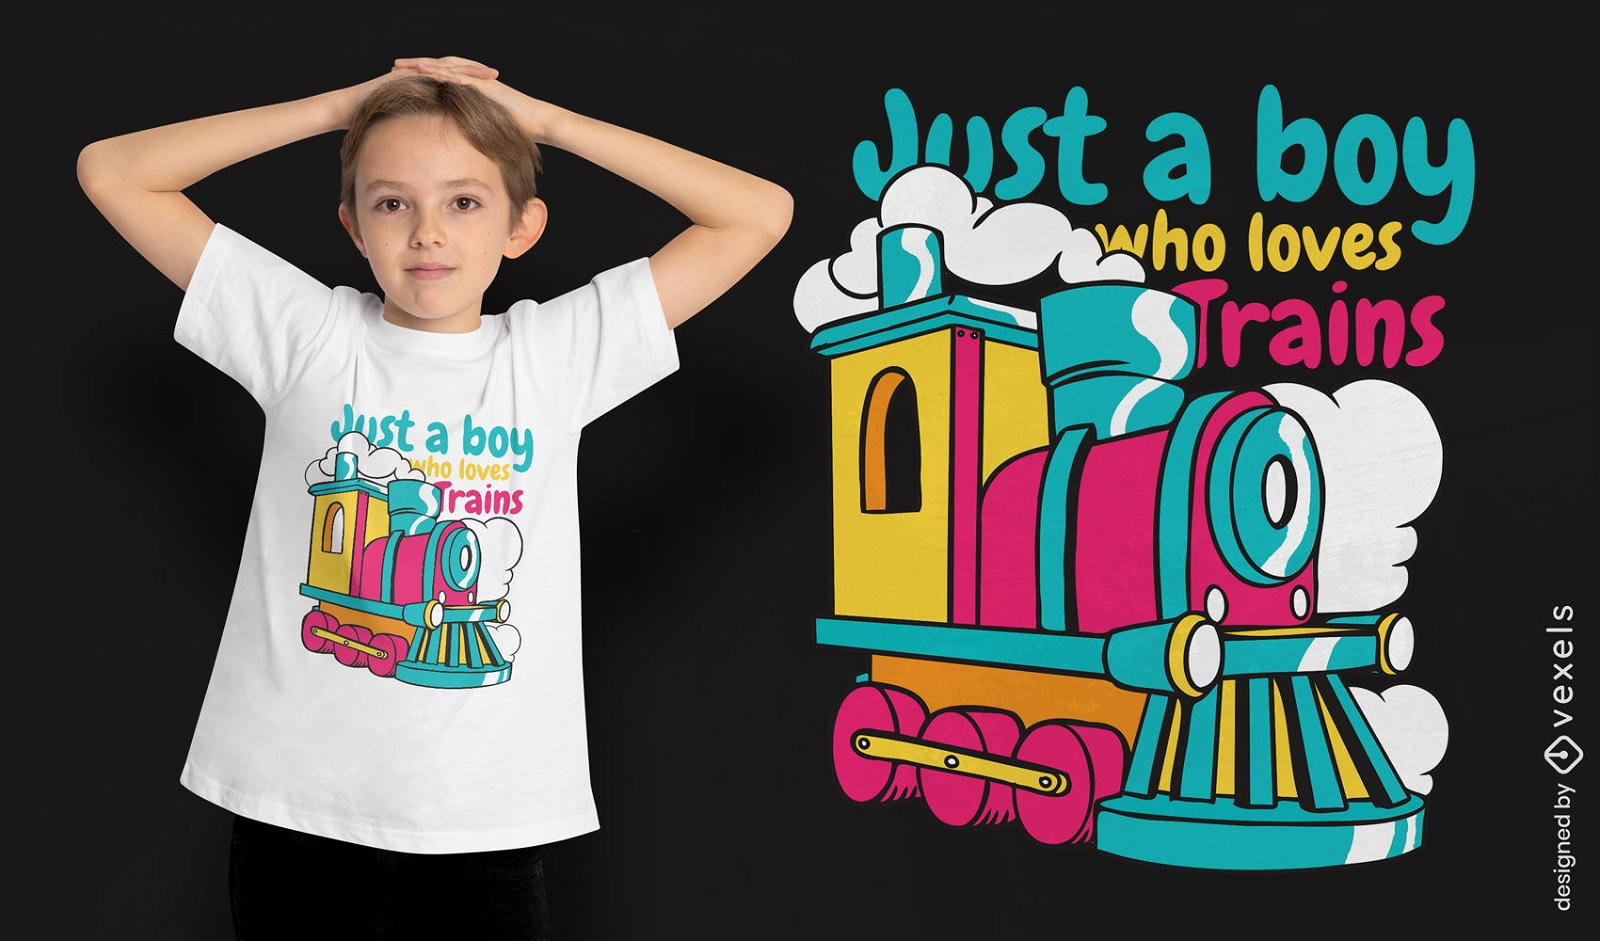 El chico ama el diseño de la camiseta de los trenes.